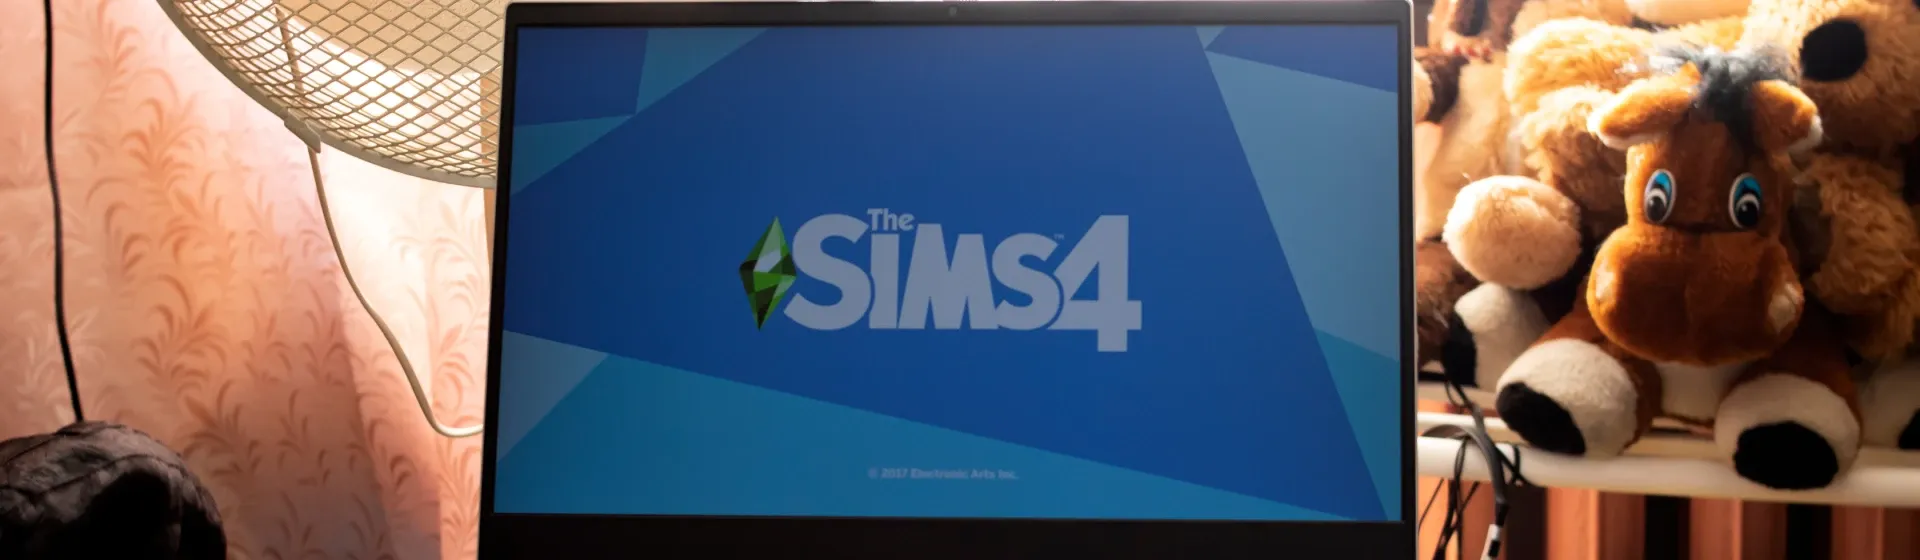 The Sims 4: requisitos mínimos e recomendados para jogar